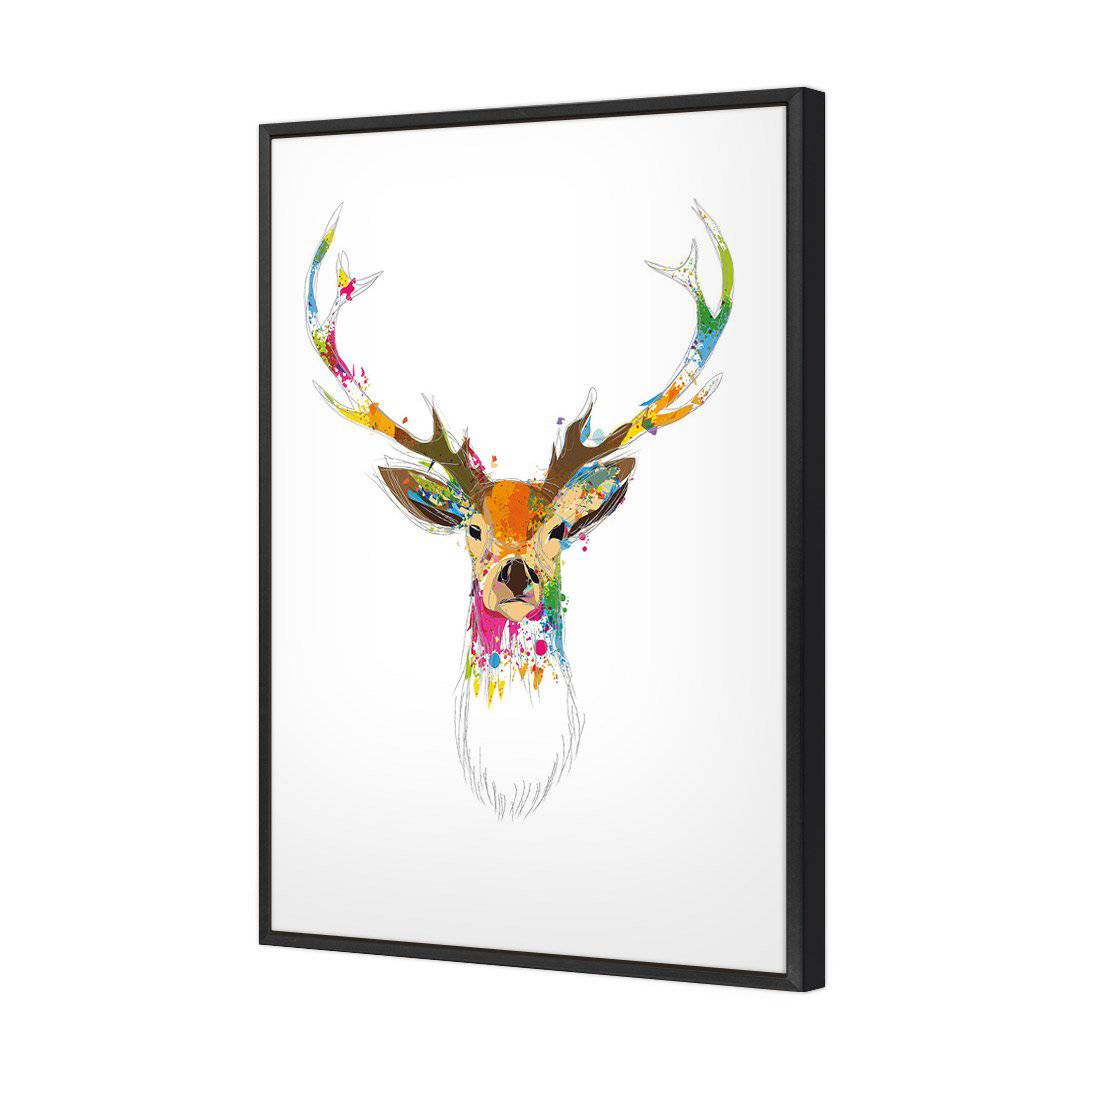 Deer Delight Canvas Art-Canvas-Wall Art Designs-45x30cm-Canvas - Black Frame-Wall Art Designs